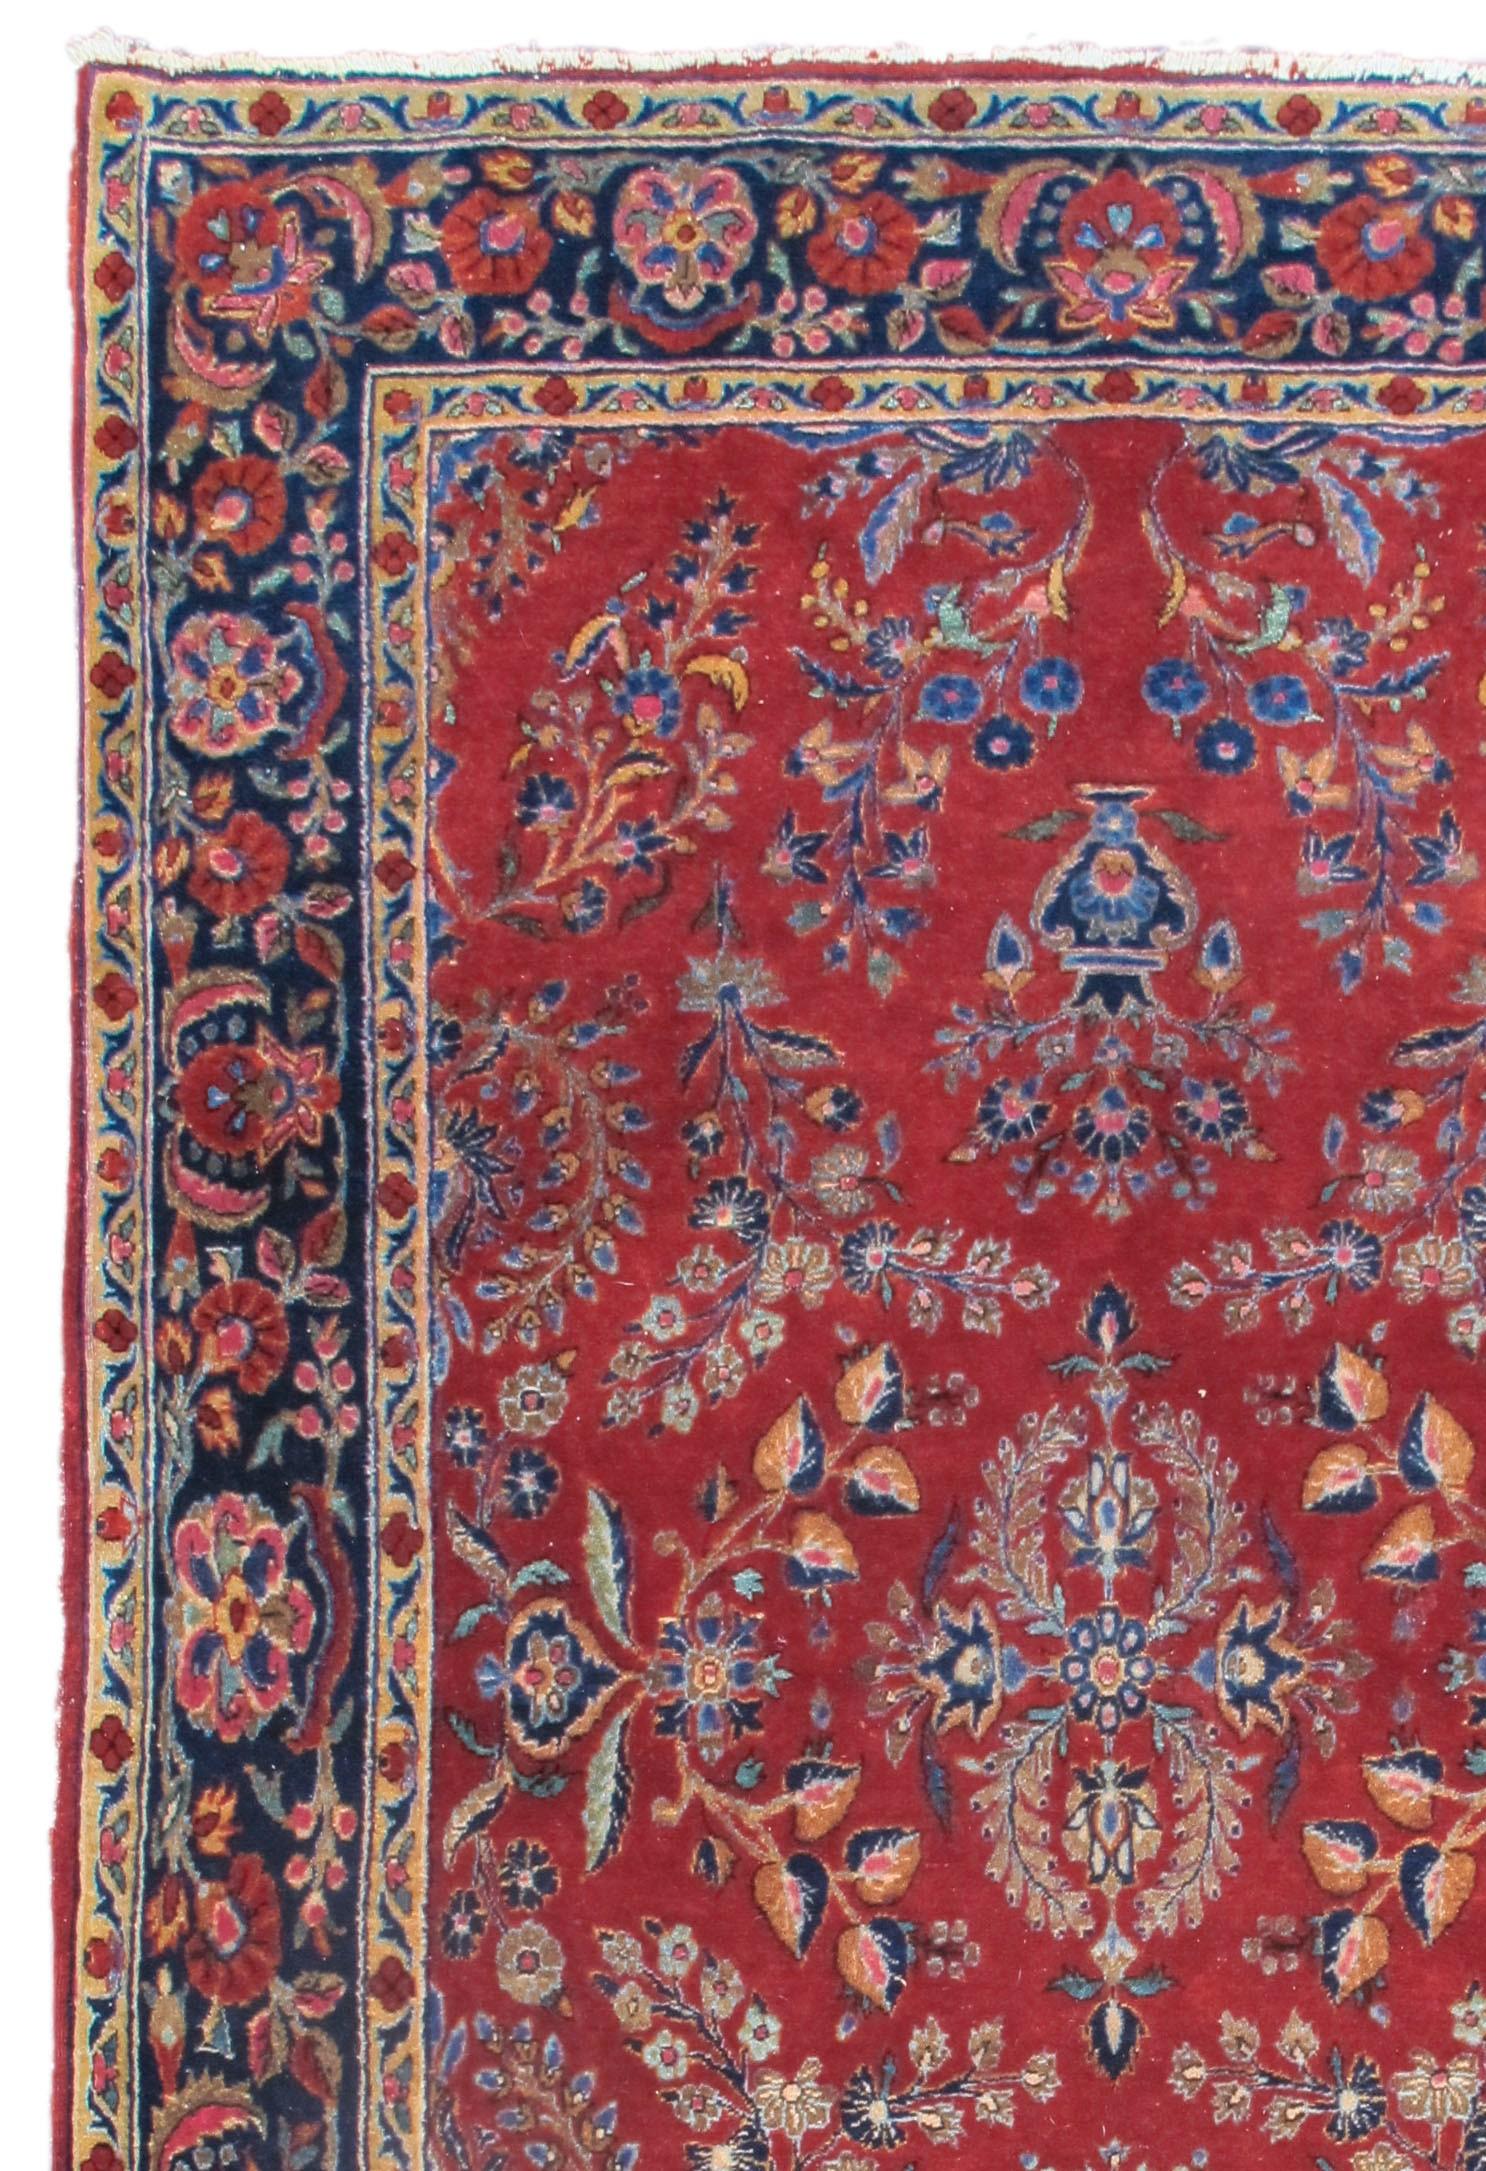 Kashan rug. Measures: 4'2